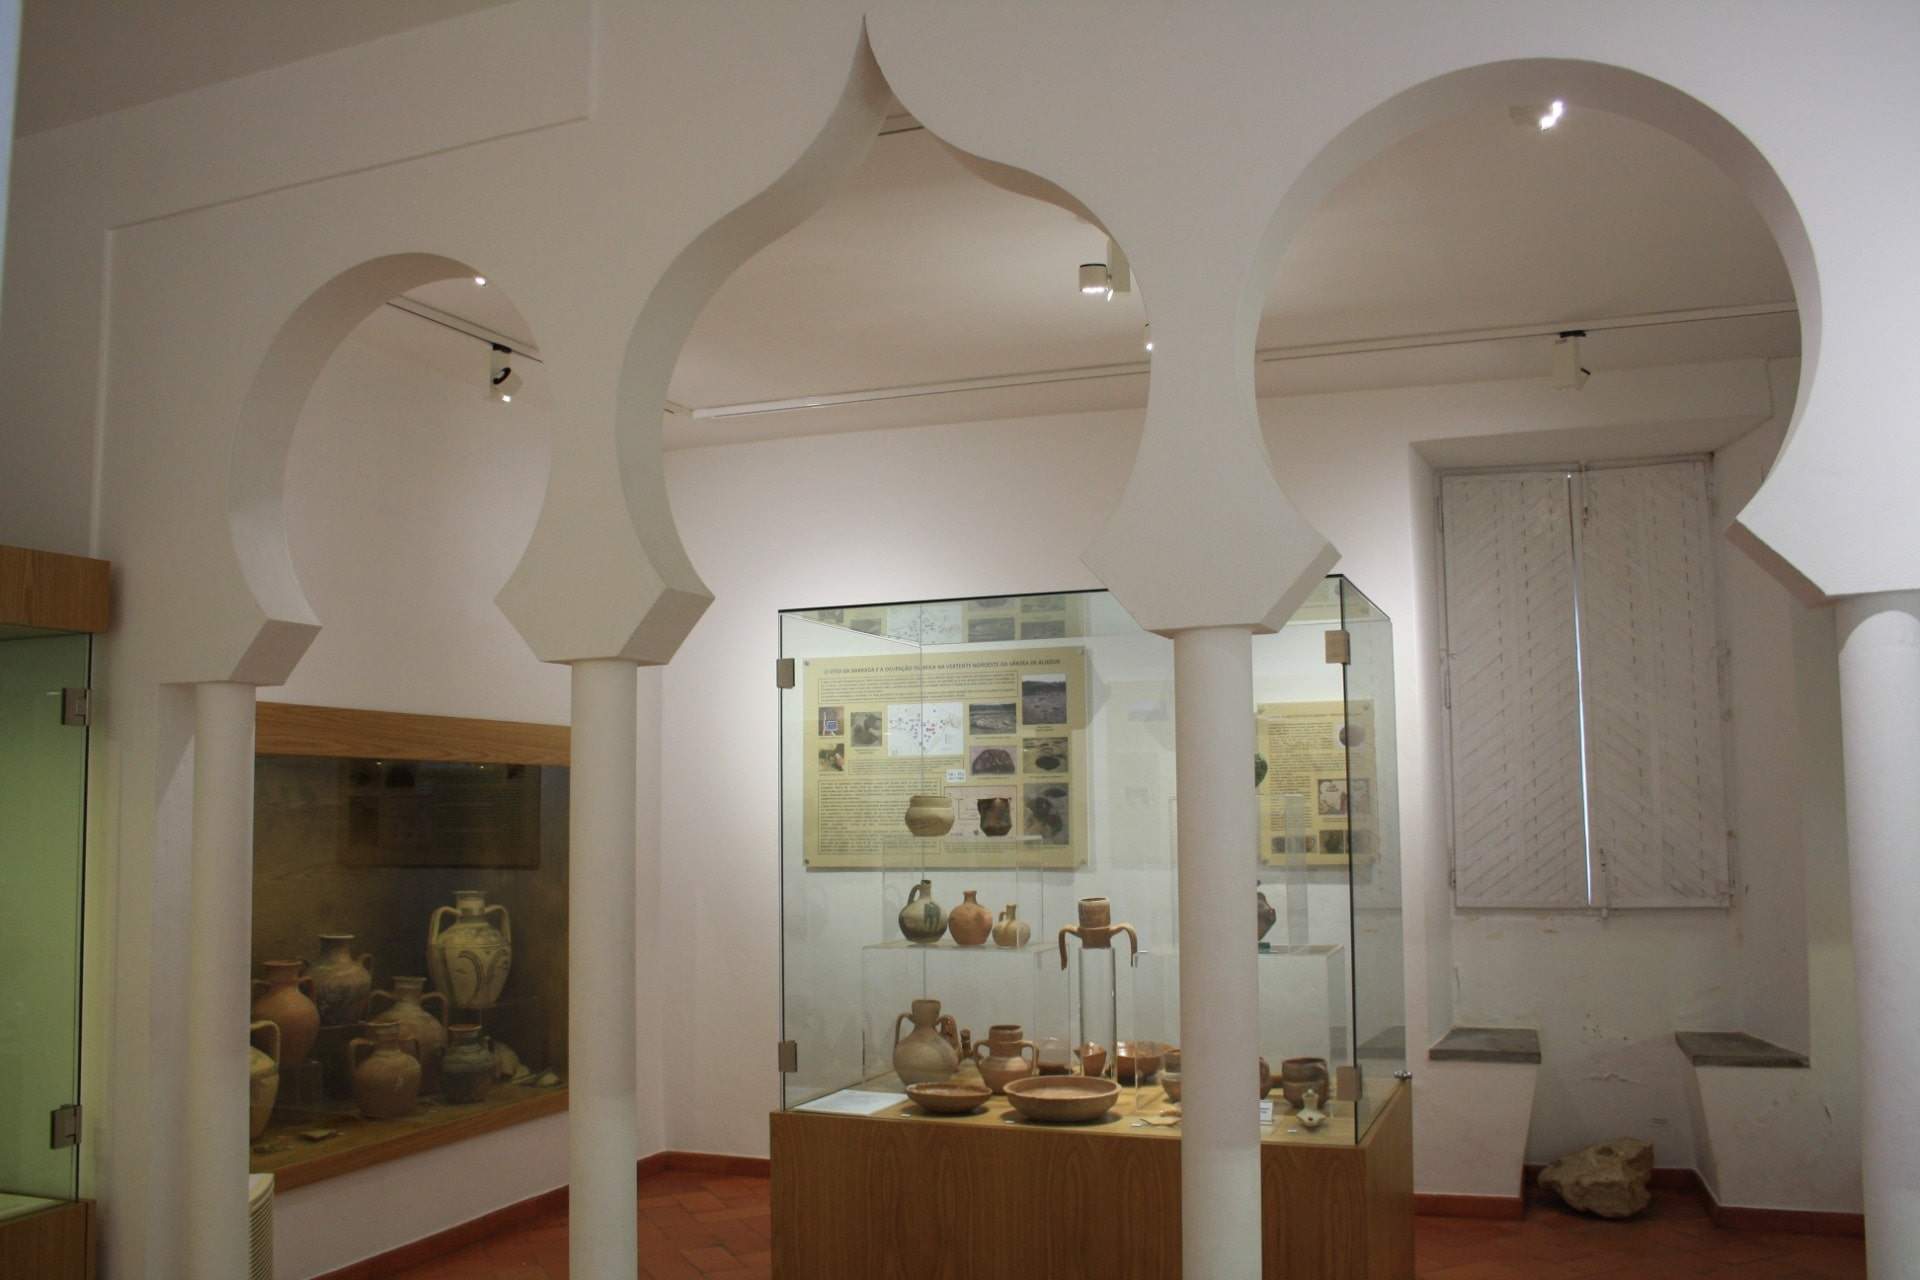 Sala del Legado Andalusí / Aljezur / ADPHA - Associação de Defesa do Património Histórico e Arqueológico de Aljezur